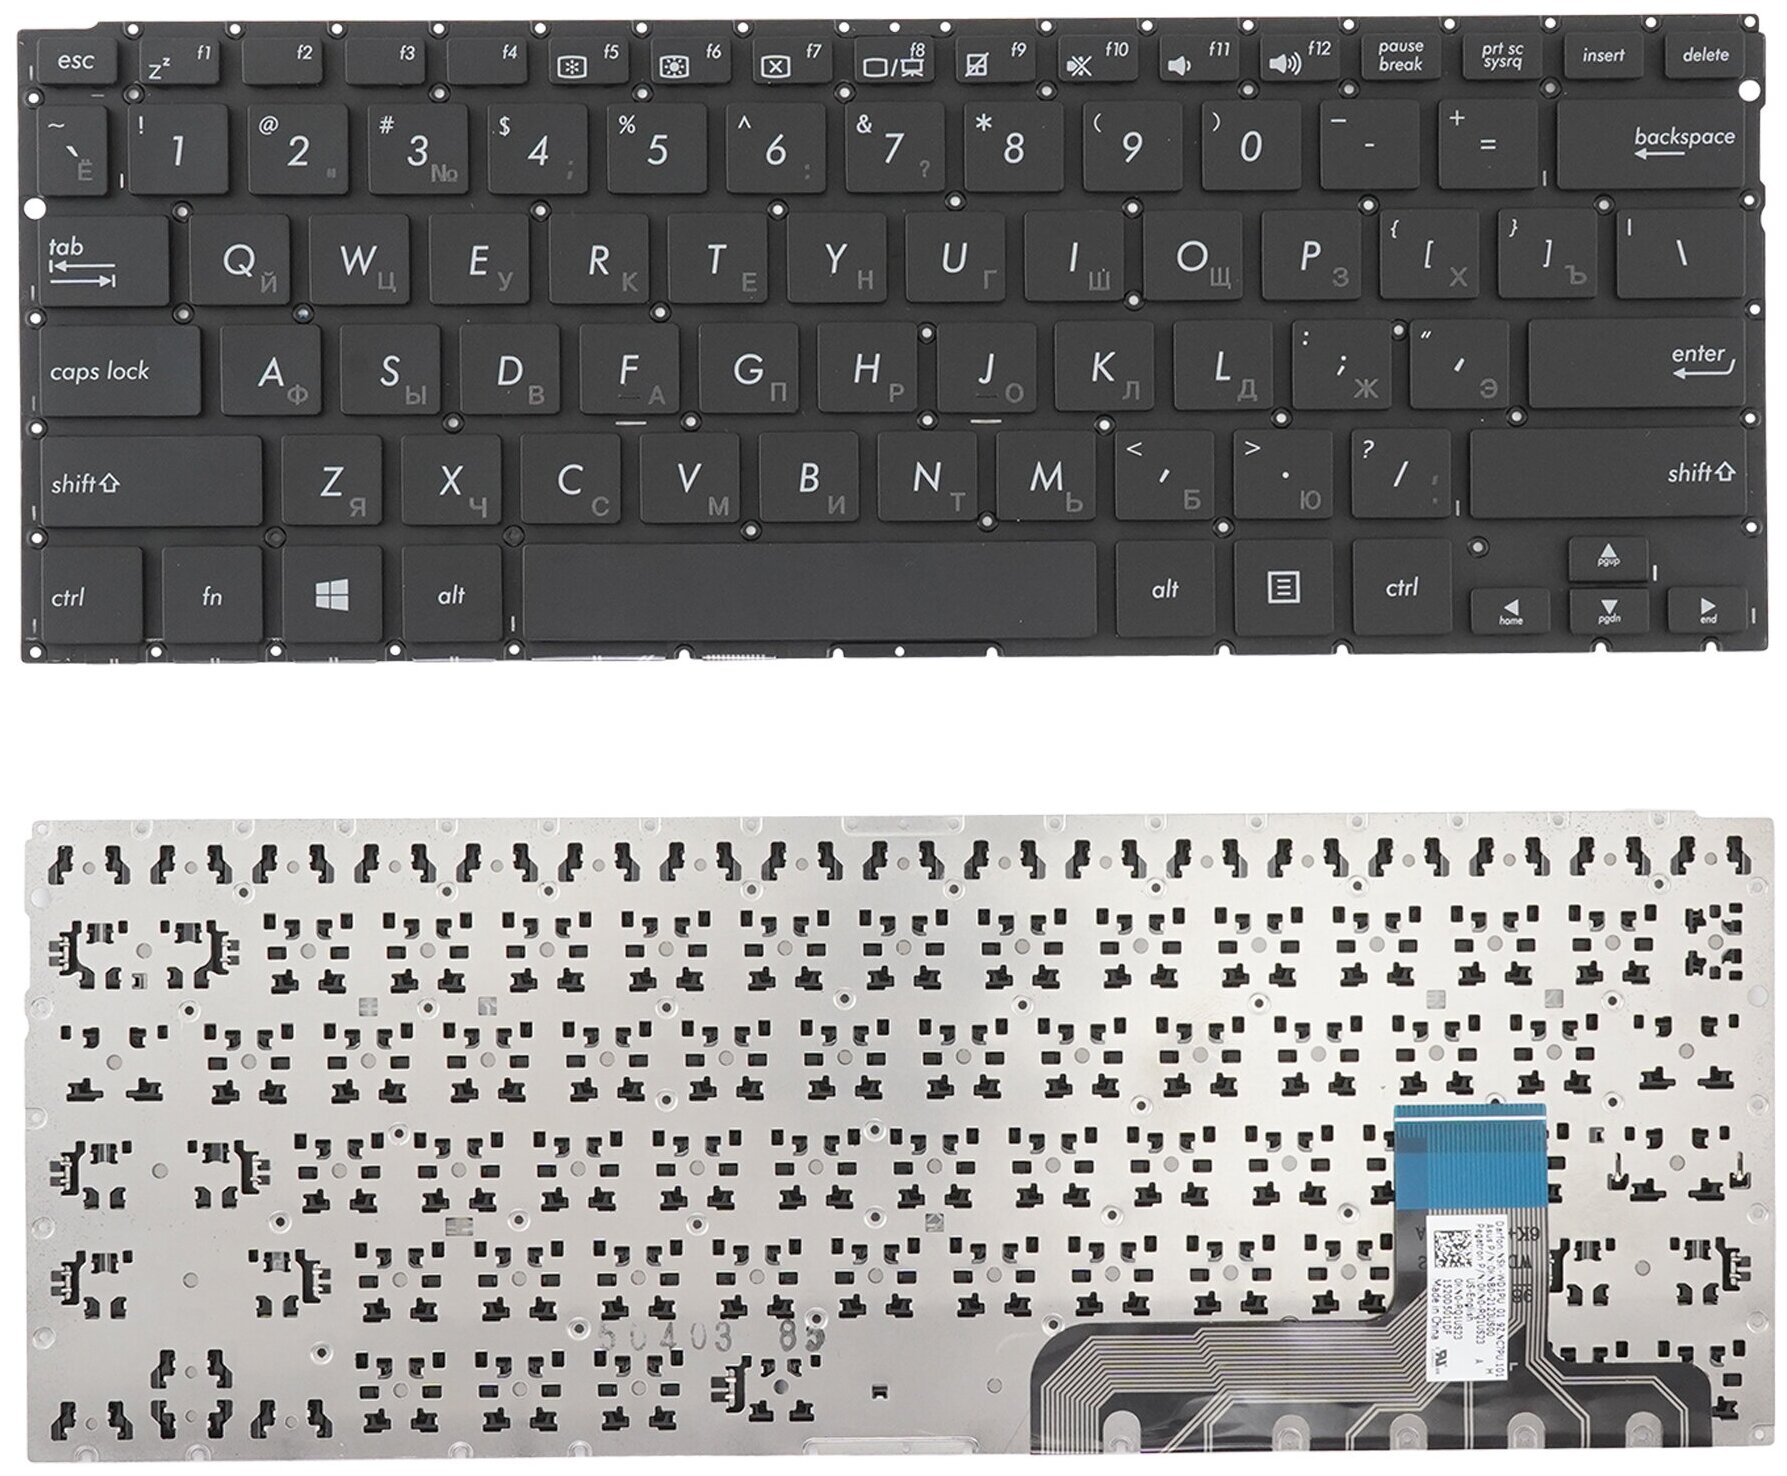 Клавиатура для ноутбука Asus T300 Transformer Book T300CHI черная